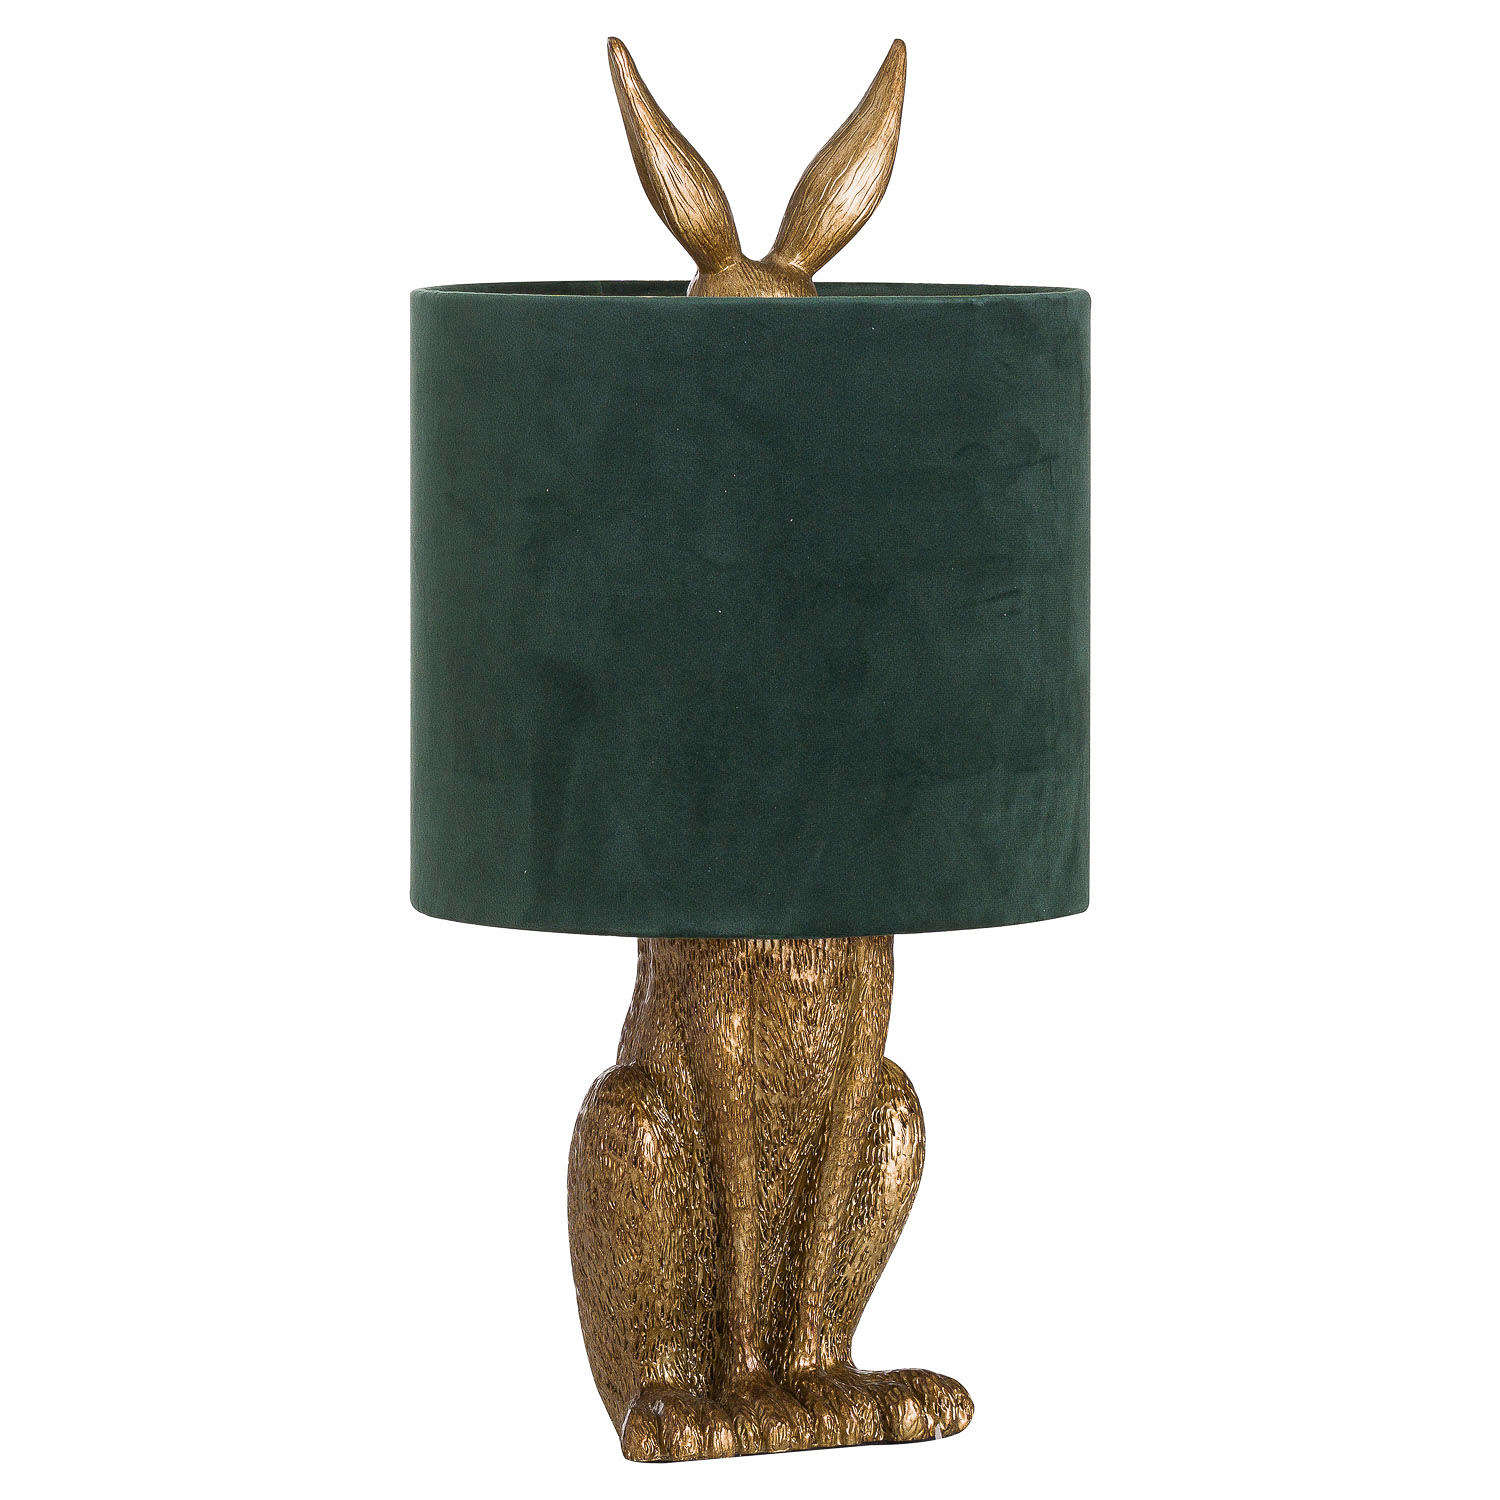 Gold rabbit lamp with green velvet shade